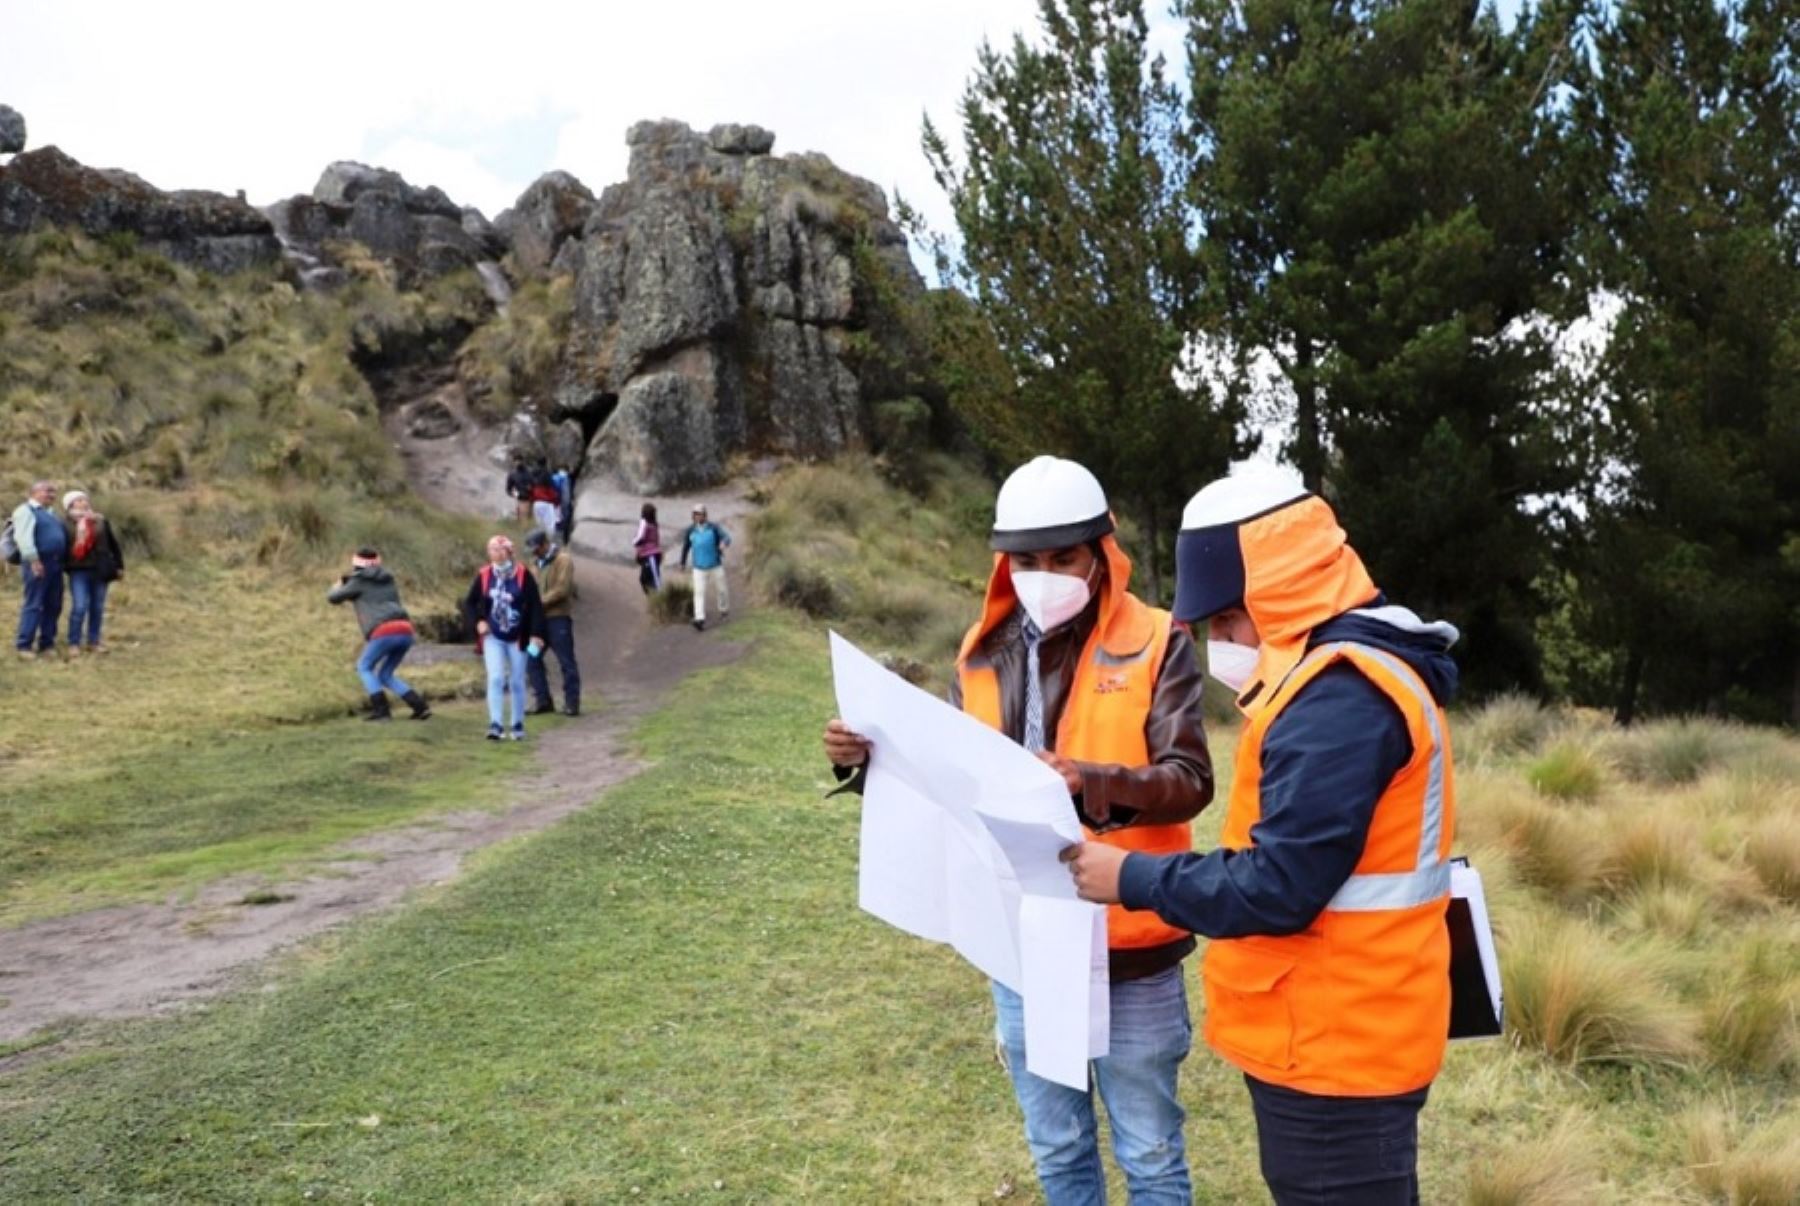 El complejo arqueológico Cumbemayo, ubicado a 19 kilómetros de la ciudad de Cajamarca, será intervenido por el Gobierno Regional de Cajamarca con una inversión de 700,000 soles para mejorar la transitabilidad y señalización lo que permitirá garantizar la seguridad de los turistas en el desplazamiento en el monumento sobre todo en época de lluvia.